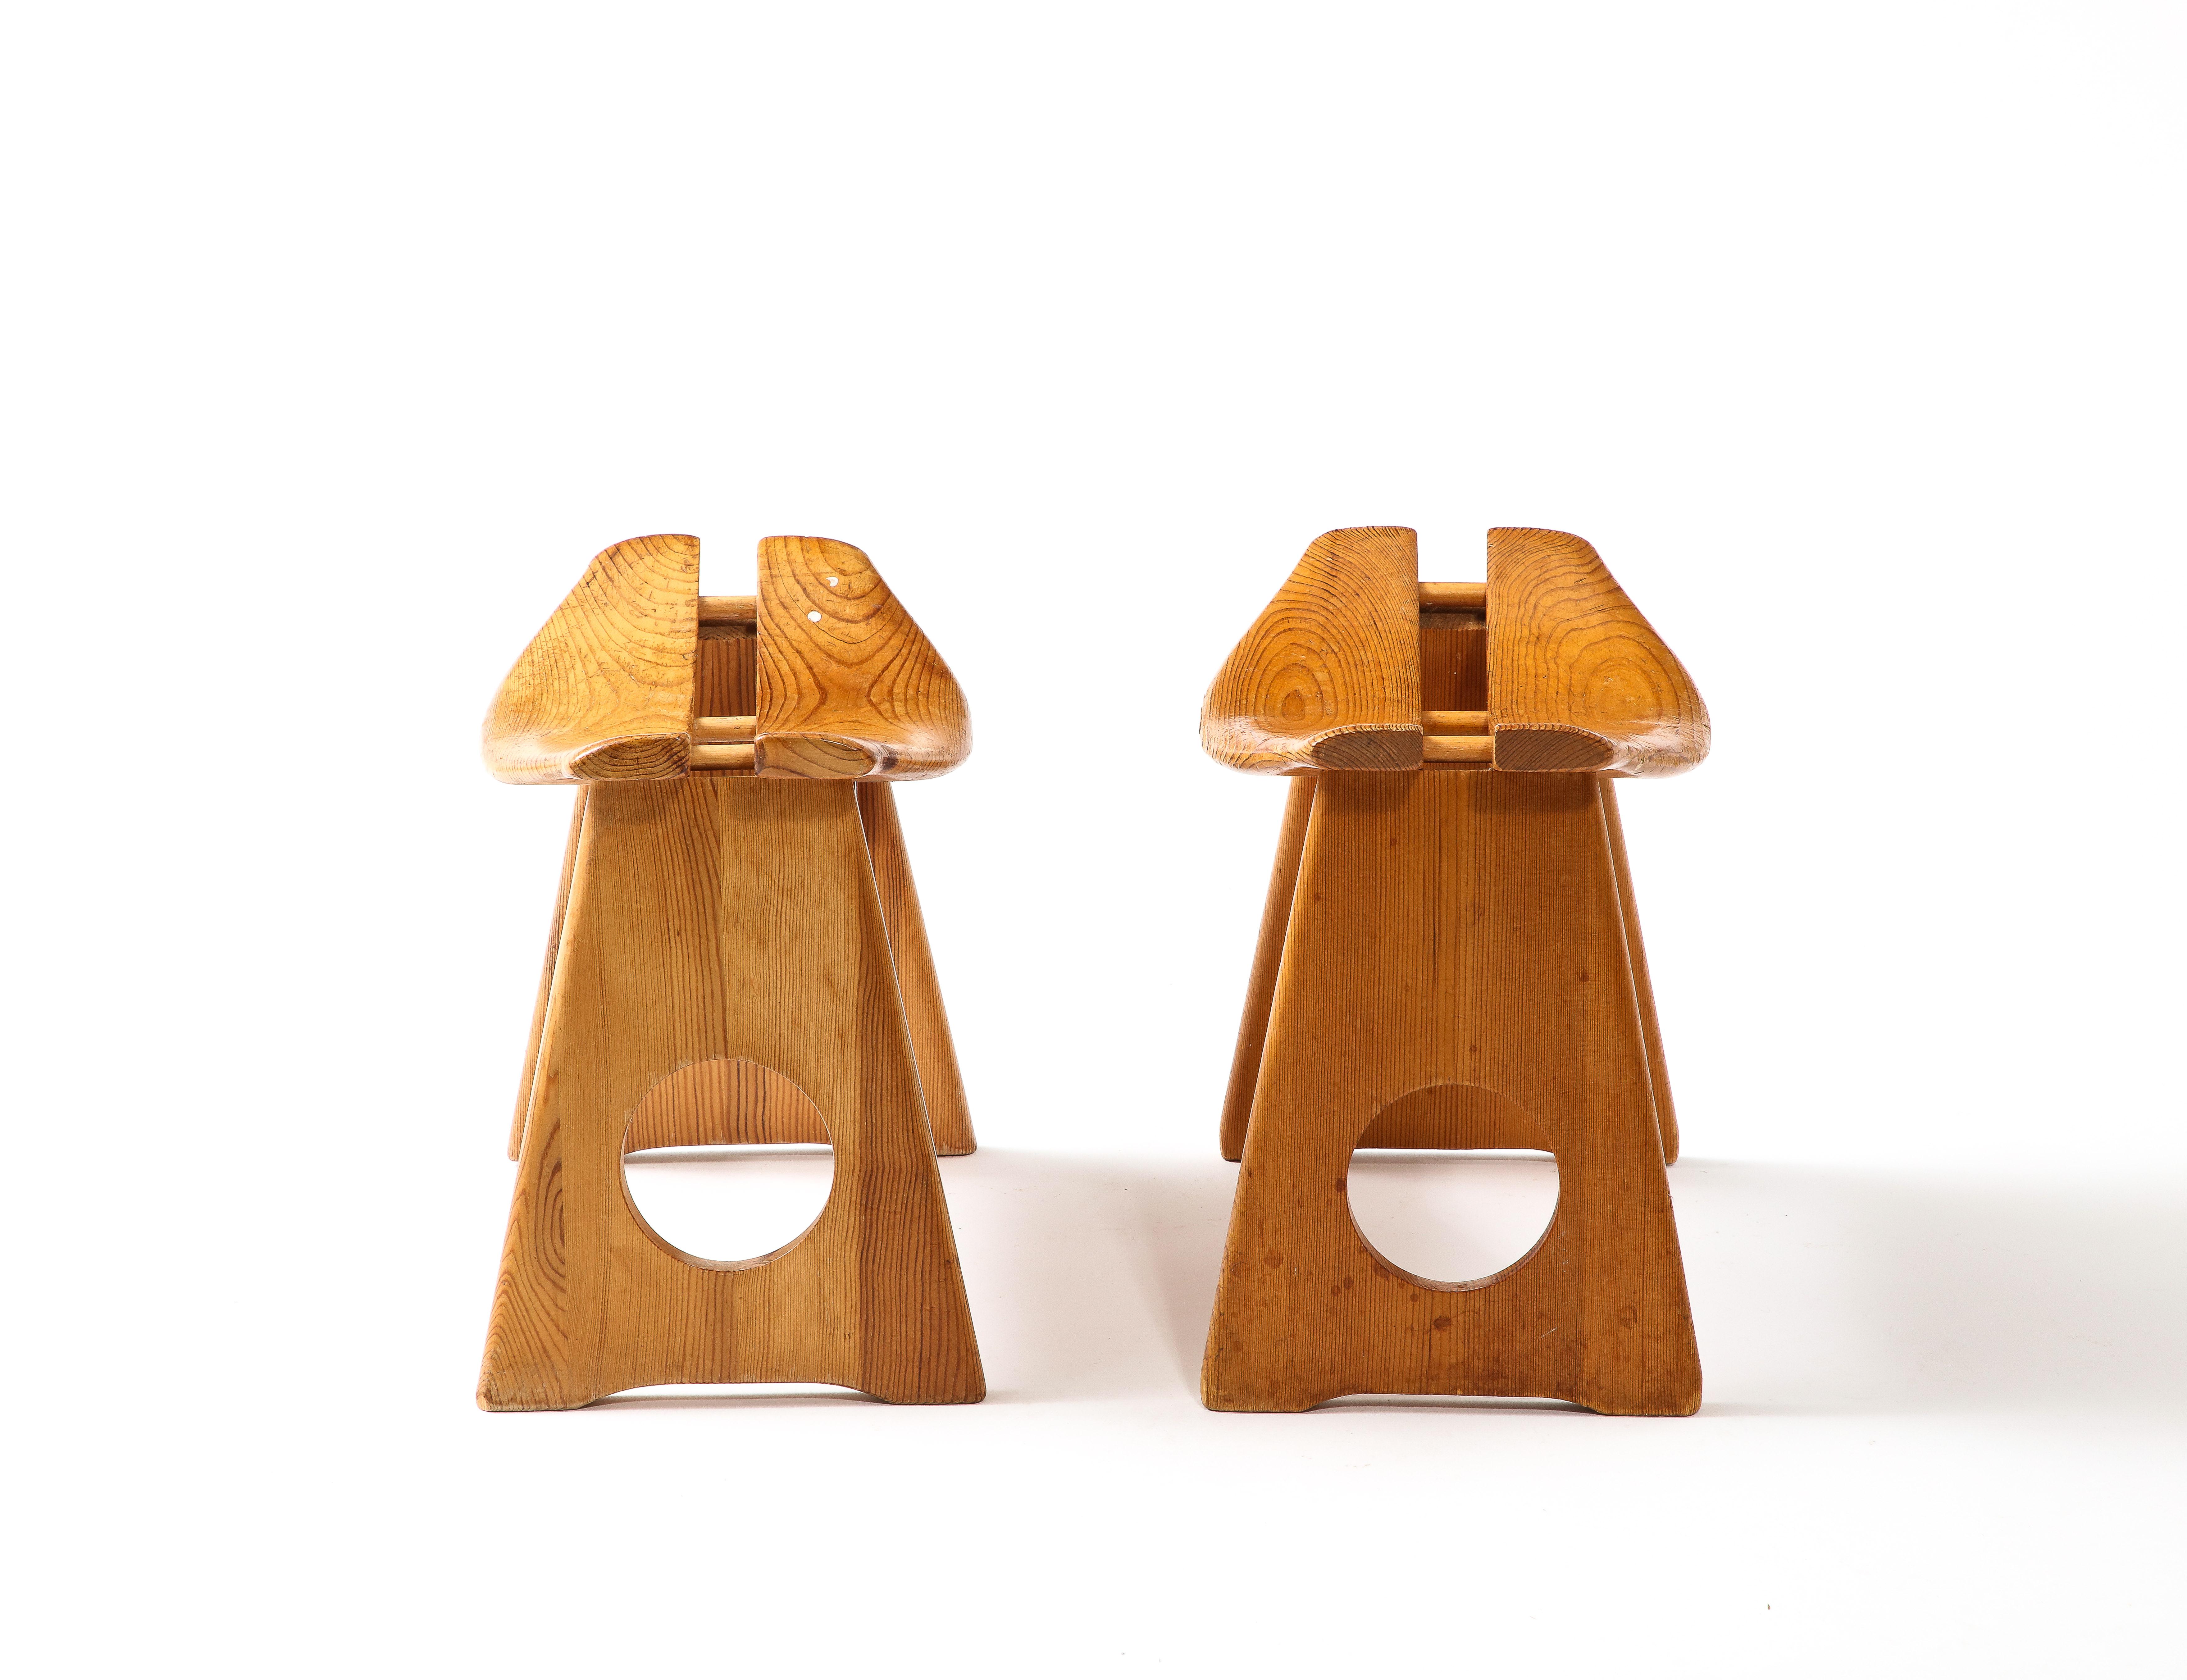 Kleine Hocker aus Eichenholz, ideal zum Halten von Handtüchern, Körben oder Gegenständen oder als gelegentliche Sitzgelegenheit.
